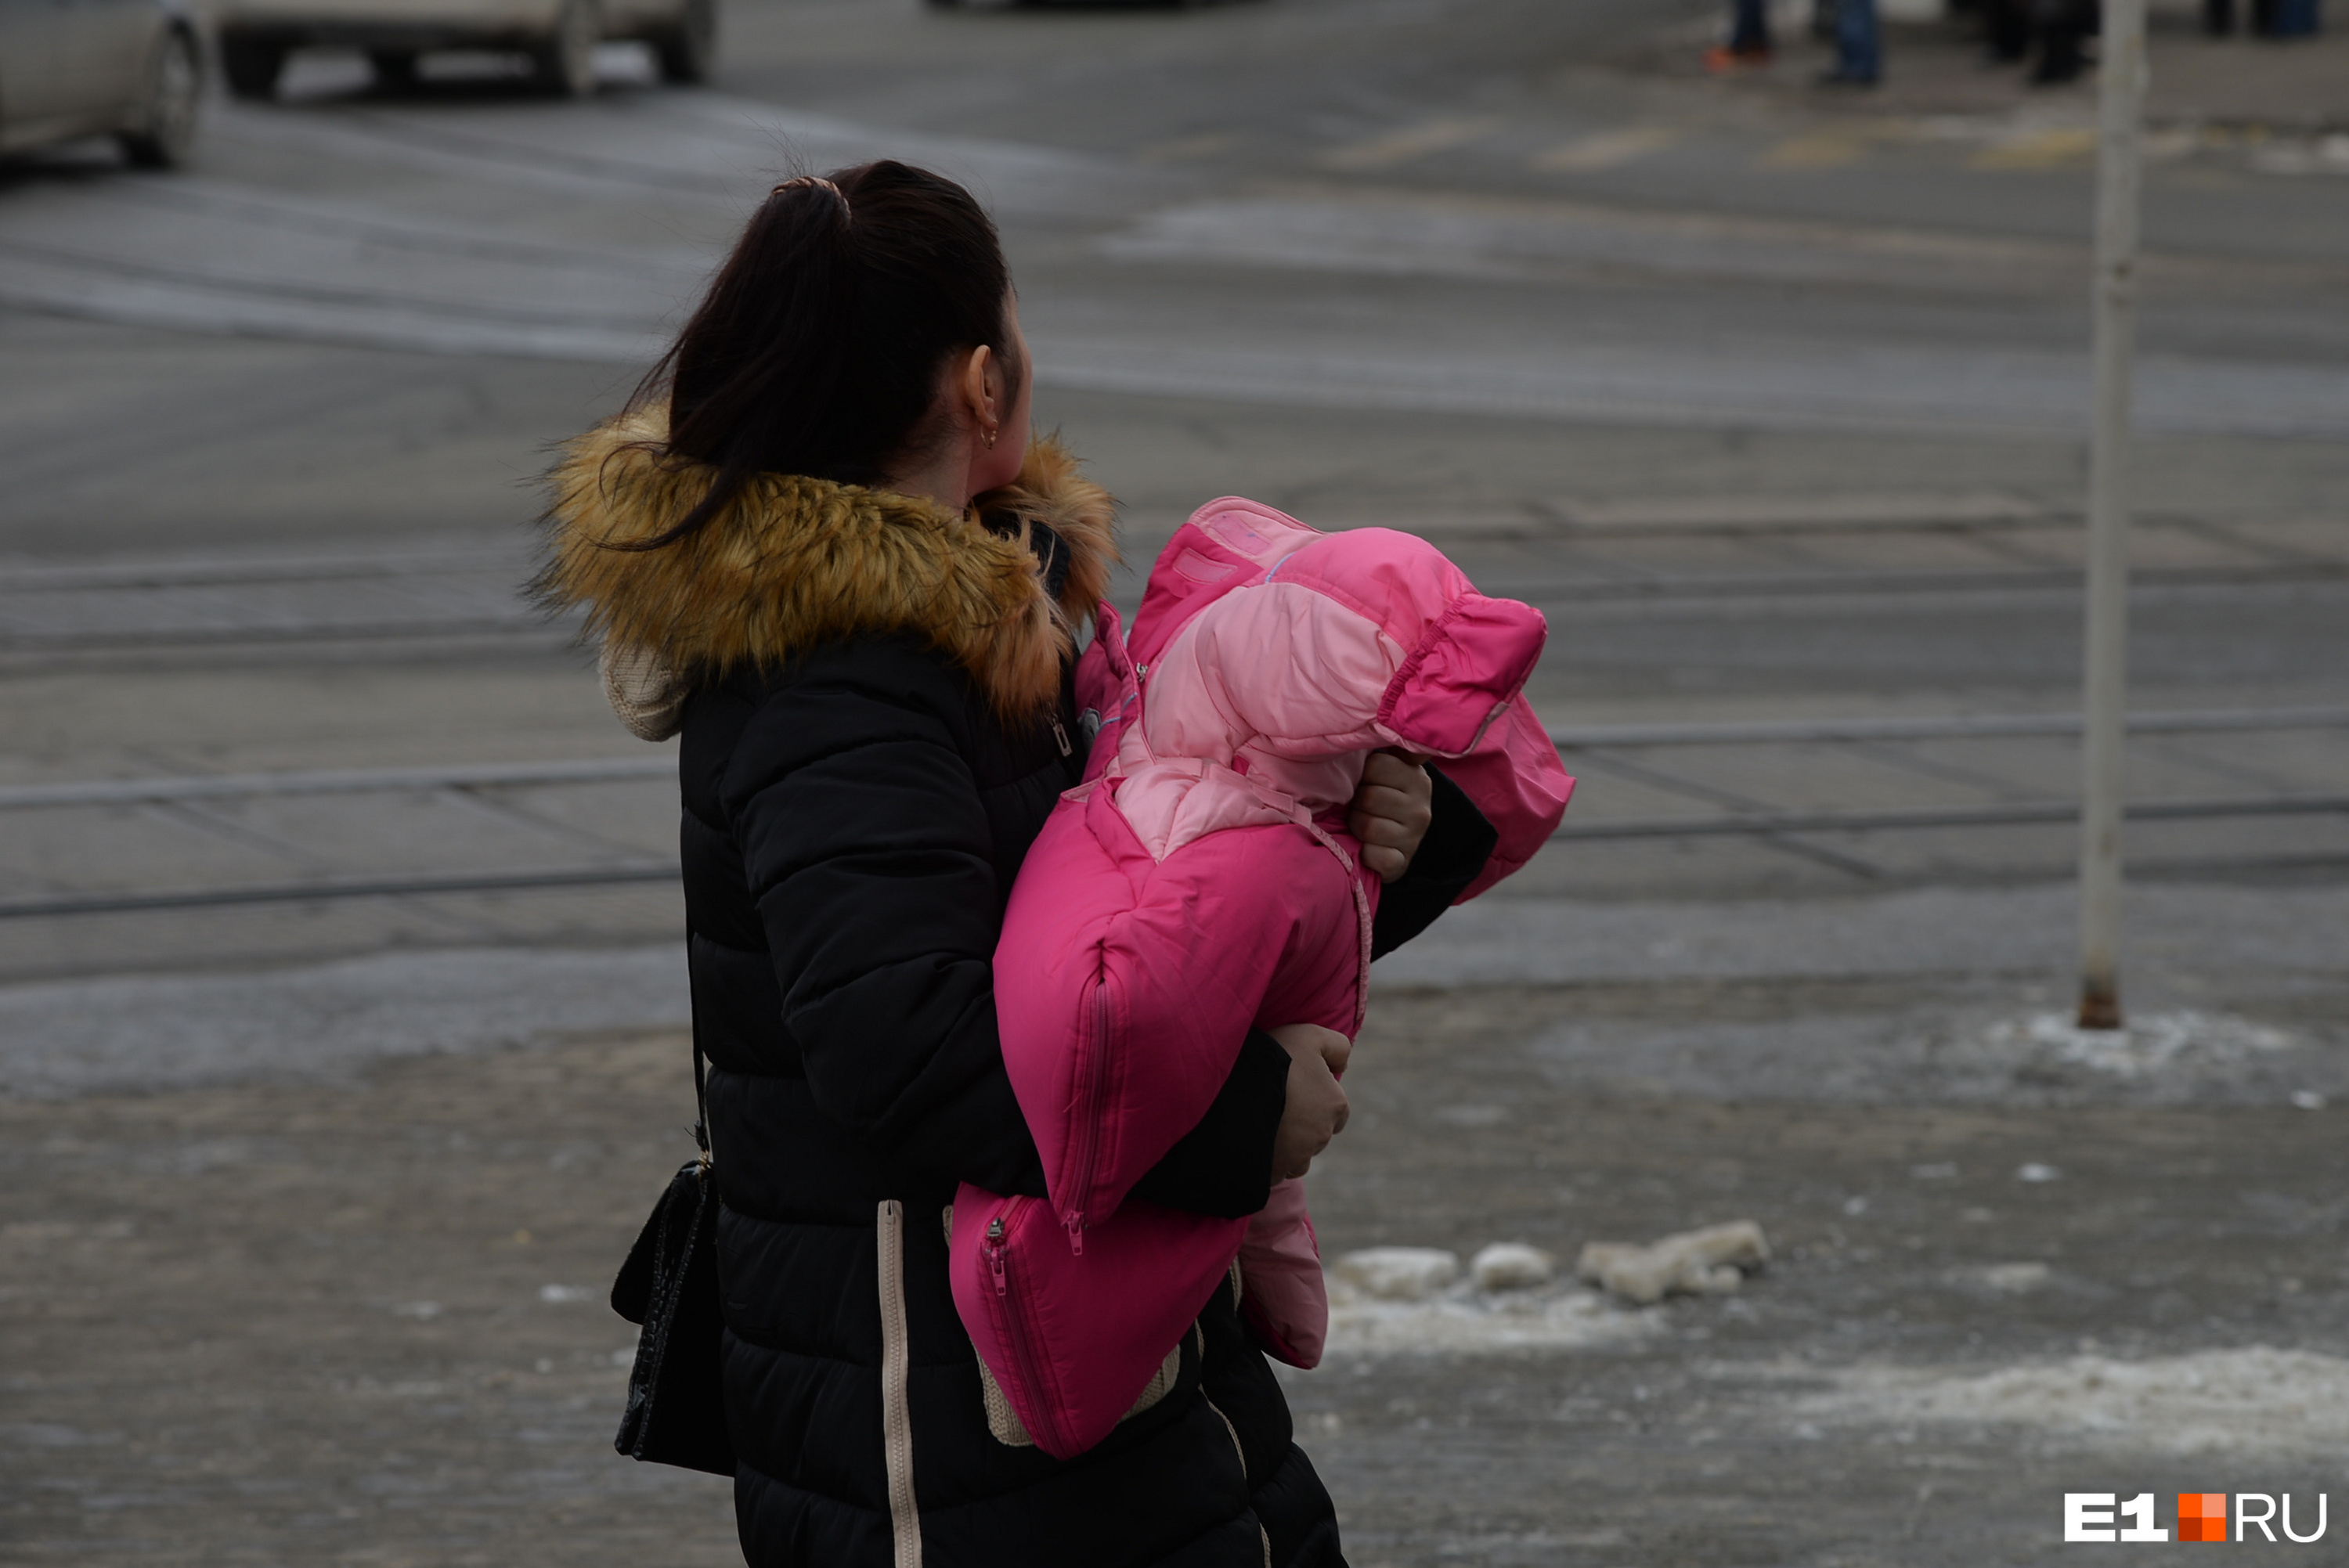 Не только авто: в Екатеринбурге воры привели в негодность коляску многодетной семьи